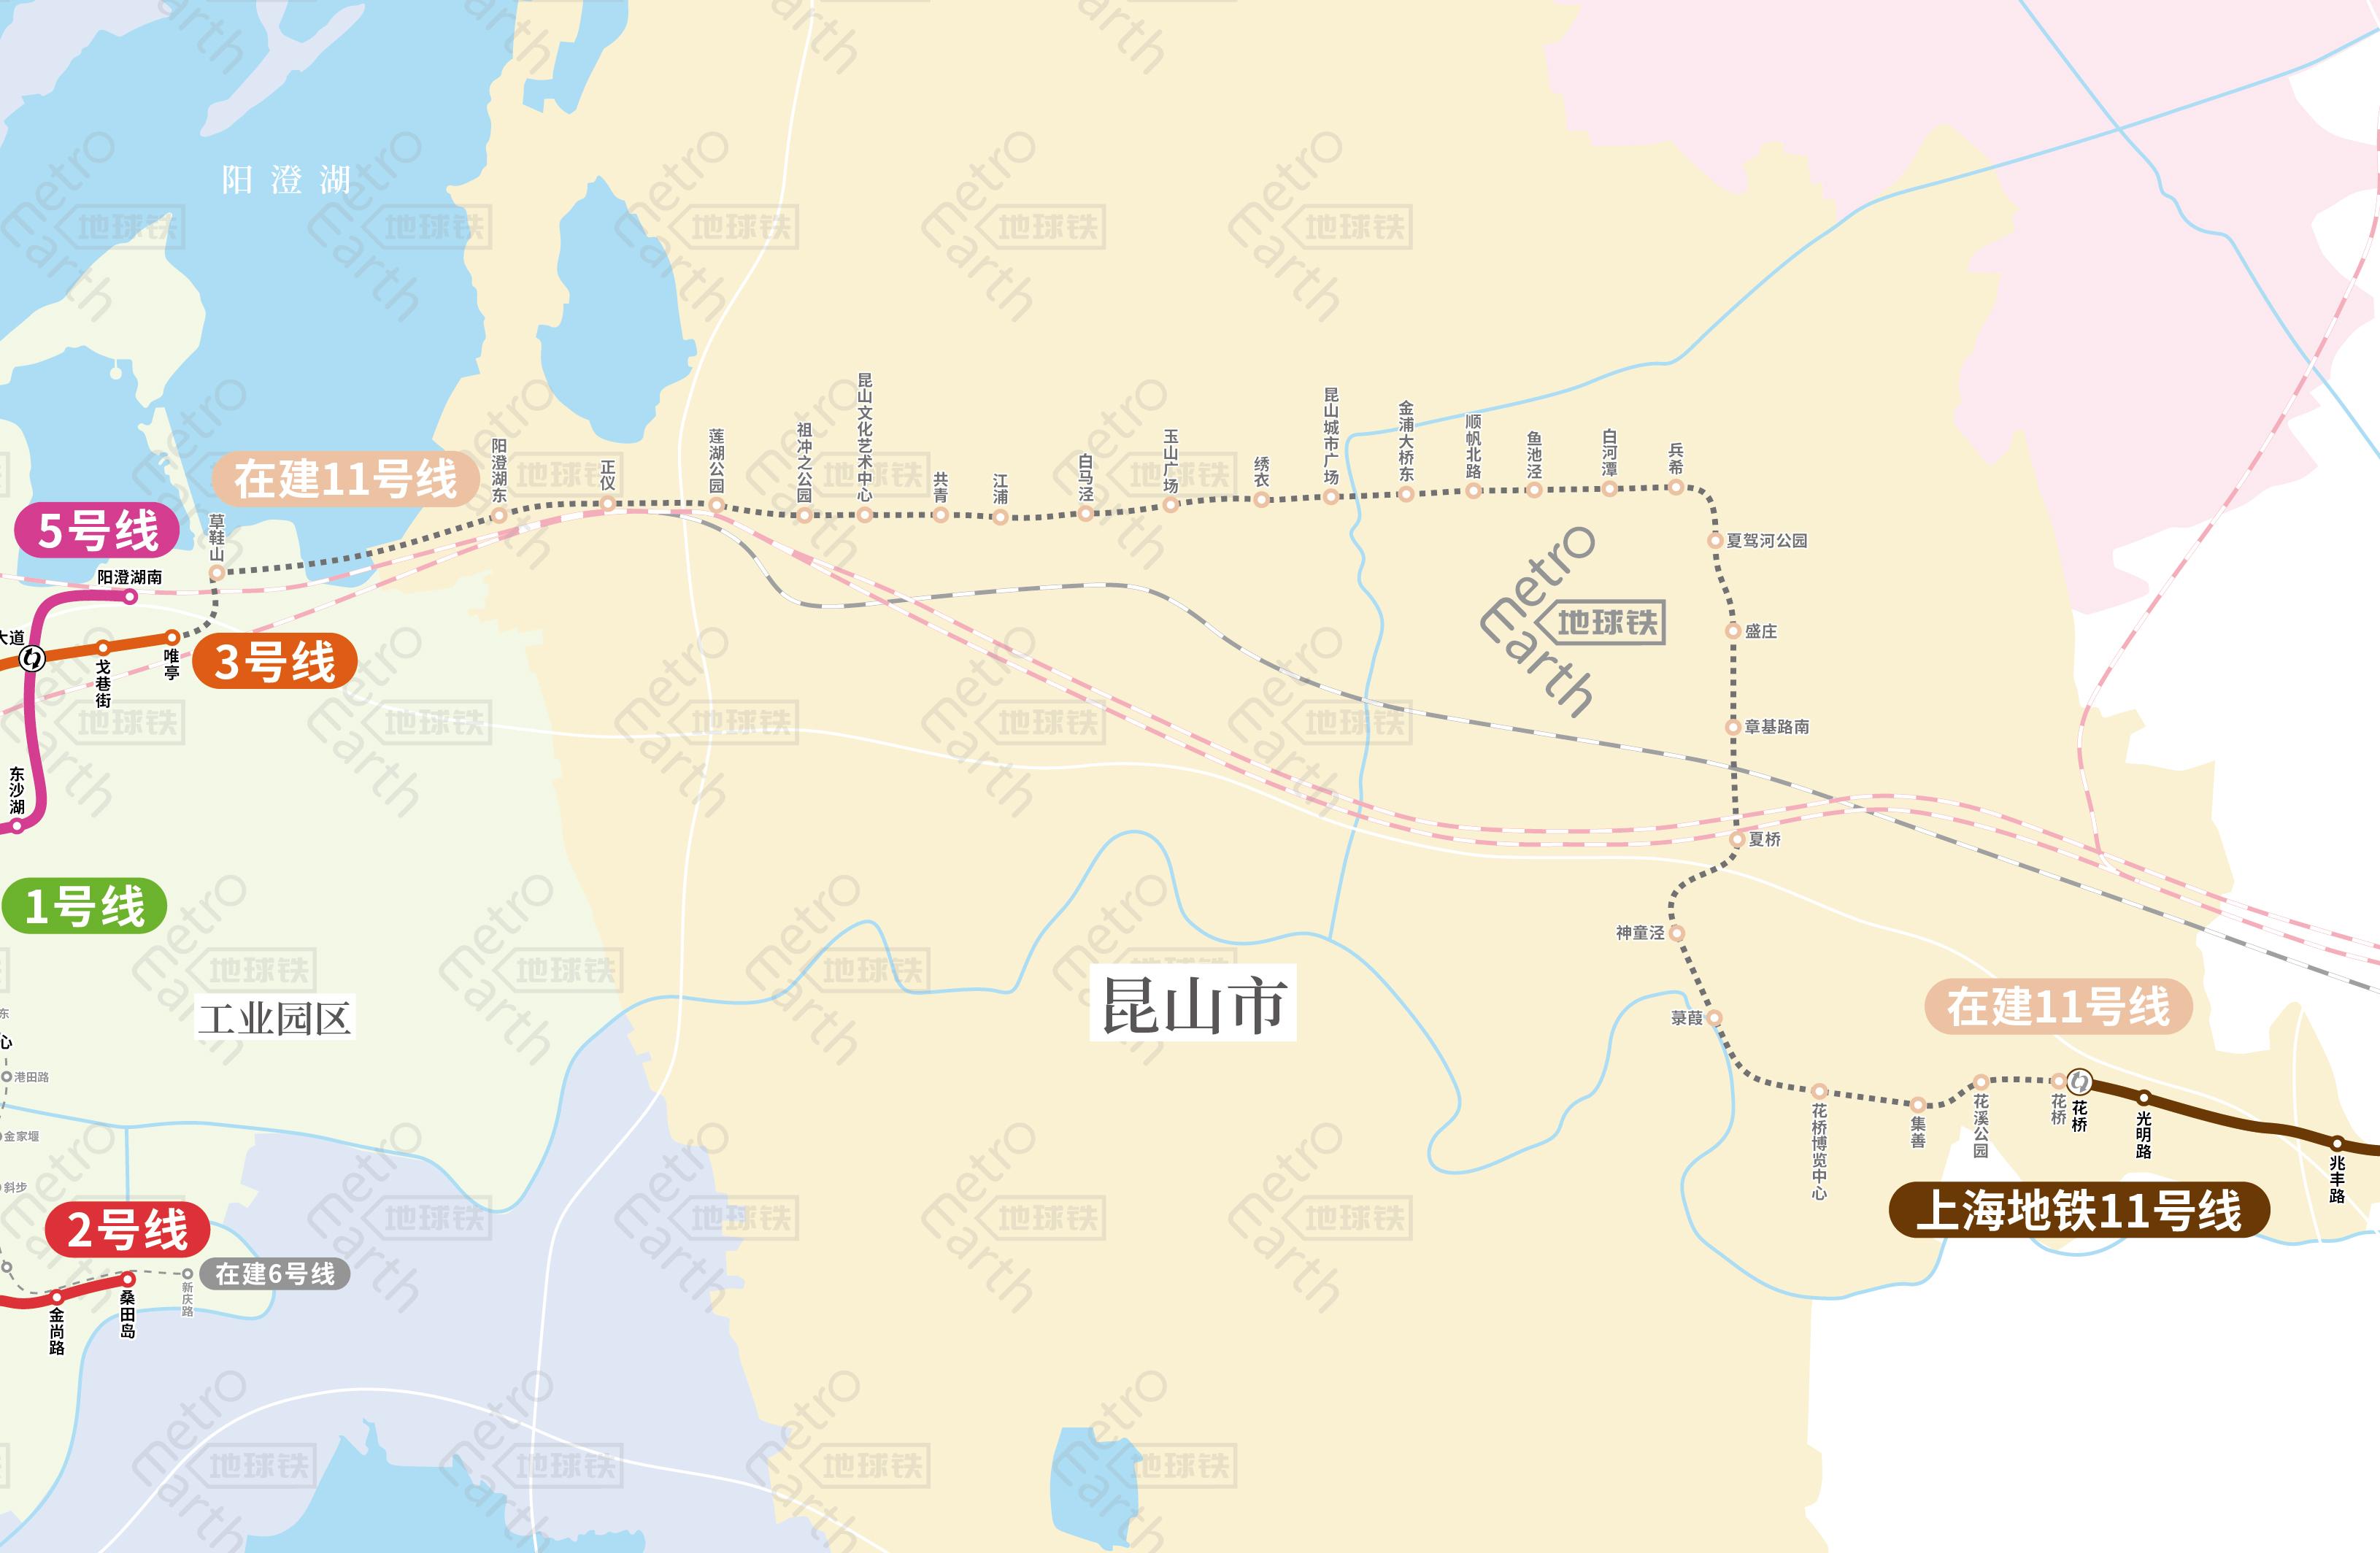 苏州地铁线路 苏州轨道交通运营(在建)线路图，苏州地铁线路图  第11张